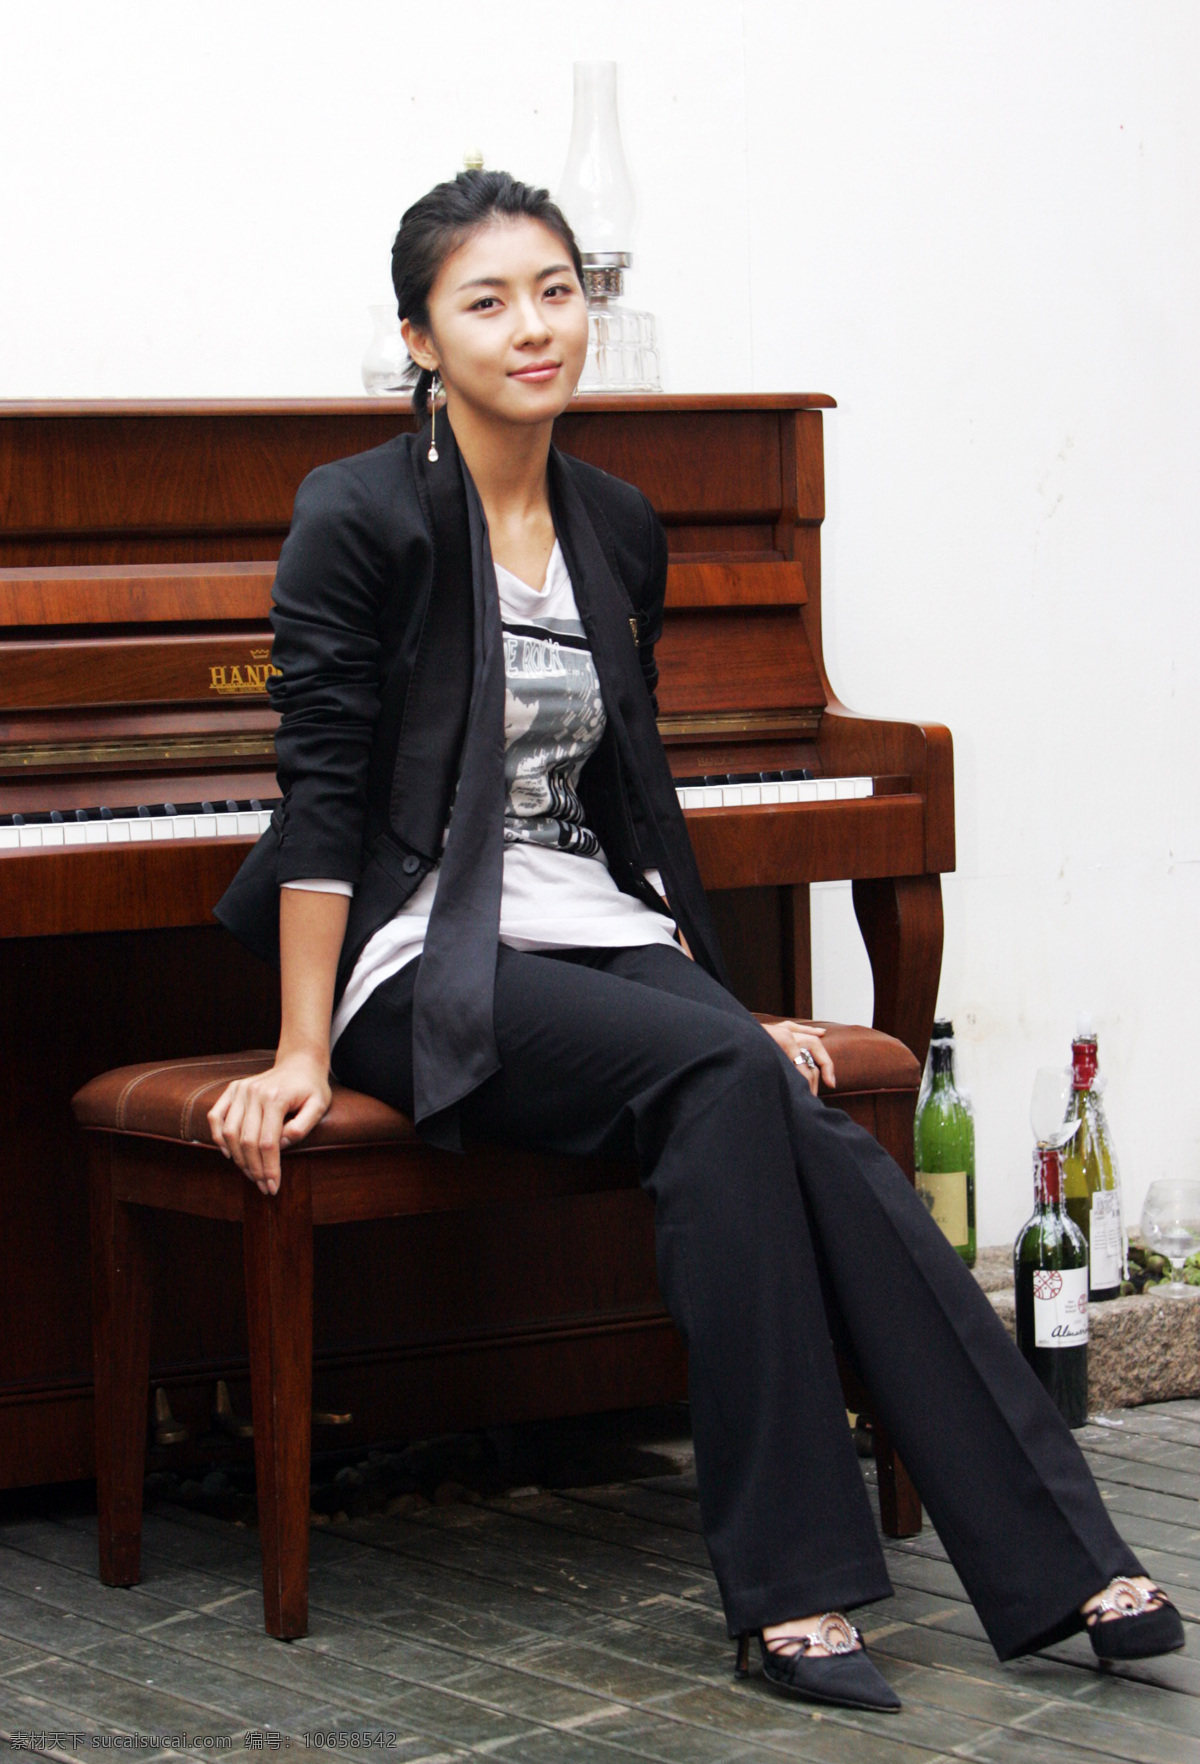 坐在 钢琴 前 韩国 女星 明星偶像 女性 女人 时尚美女 明星 性感美女 美女模特 美女写真 名人明星 明星图片 人物图片